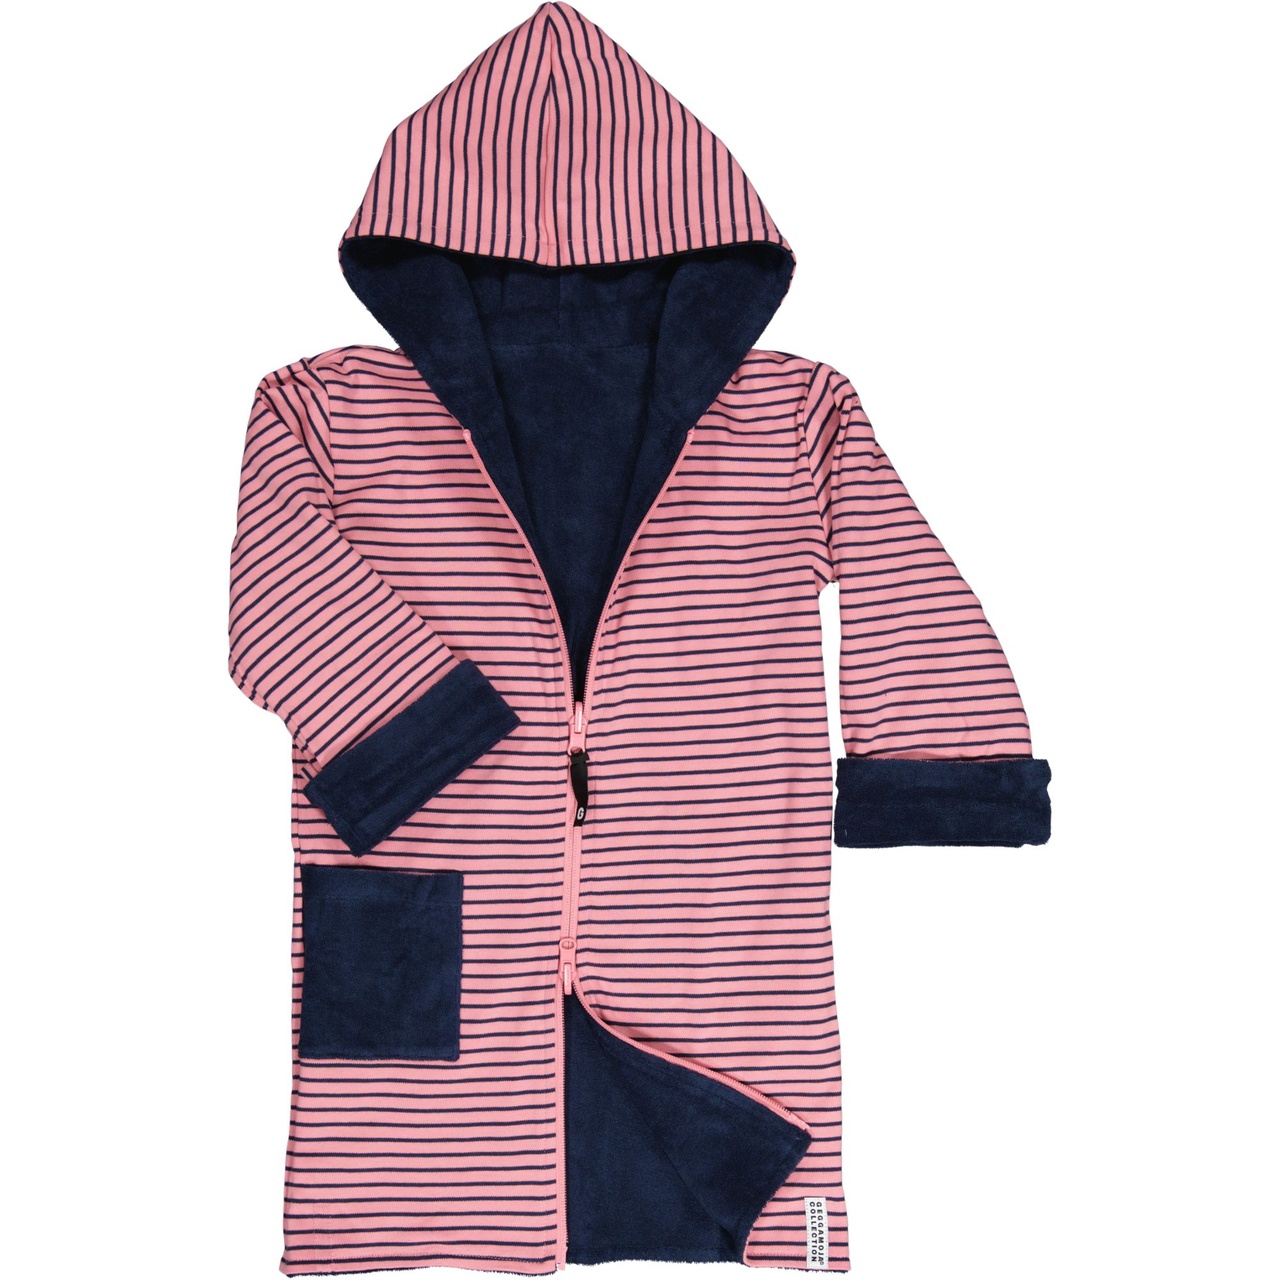 Kids bathrobe Navy/pink-navy 98/104